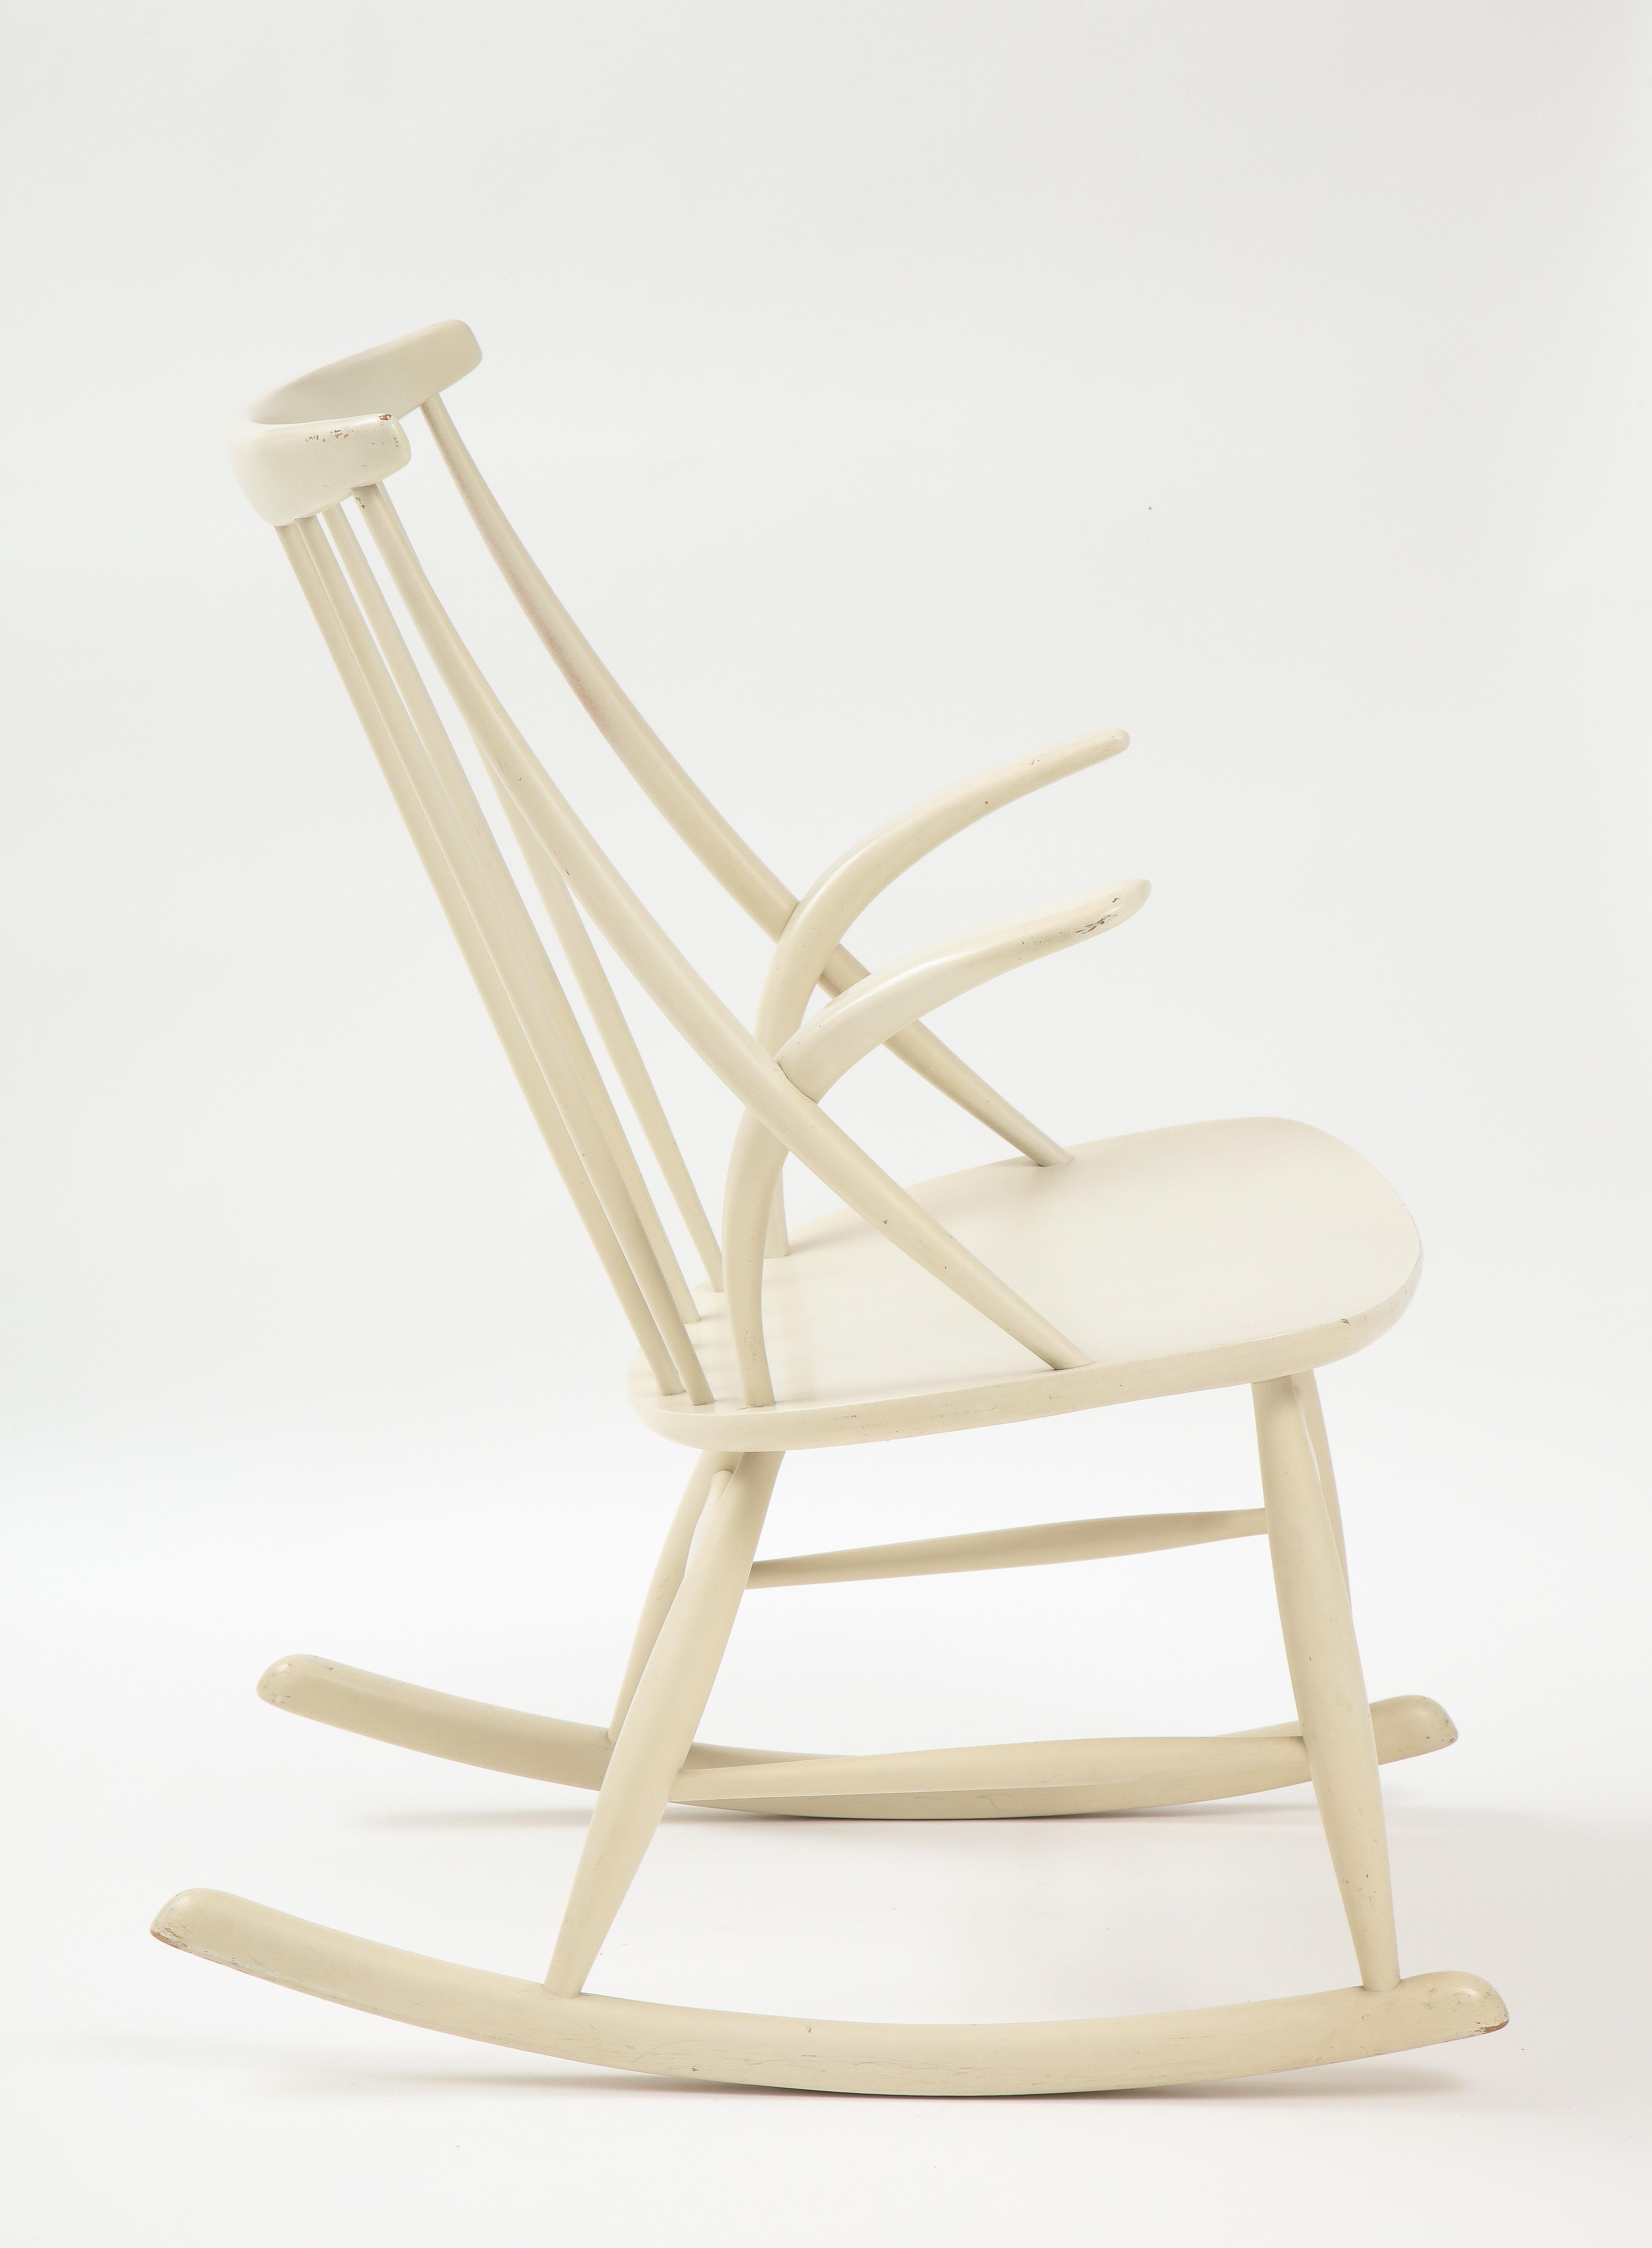 Scandinavian Modern Illum Wikkelsø Rocking Chair, Mod. Iw3, Niels Eilersen, Denmark, 1958